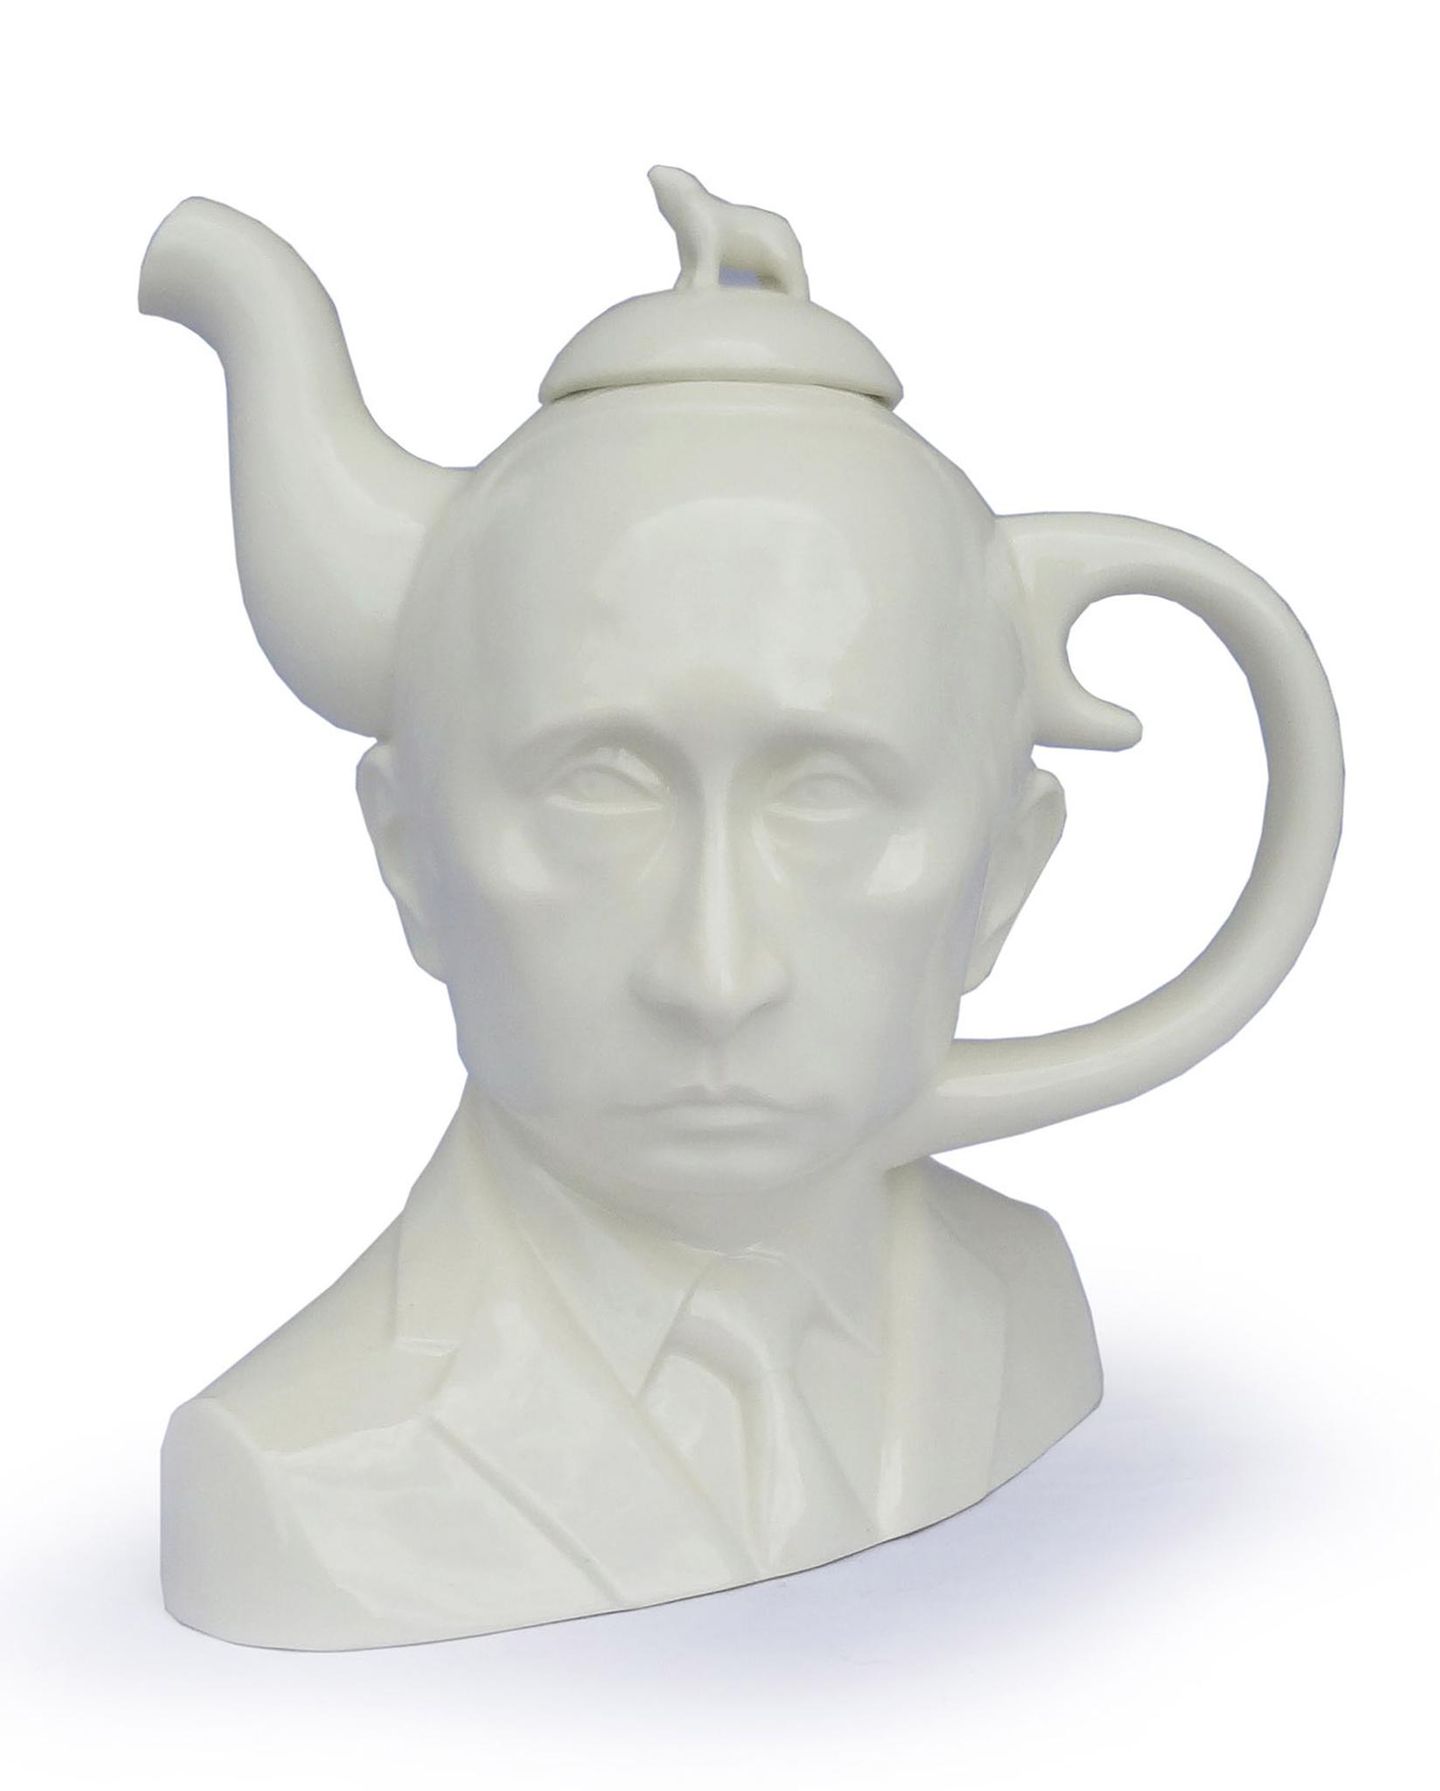 Wer sich vom russischen Präsidenten Wladimir Putin so richtig einen einschenken lassen möchte, dem sei diese Teekanne des amerikanischen Künstlers Mike Leavitt empfohlen.